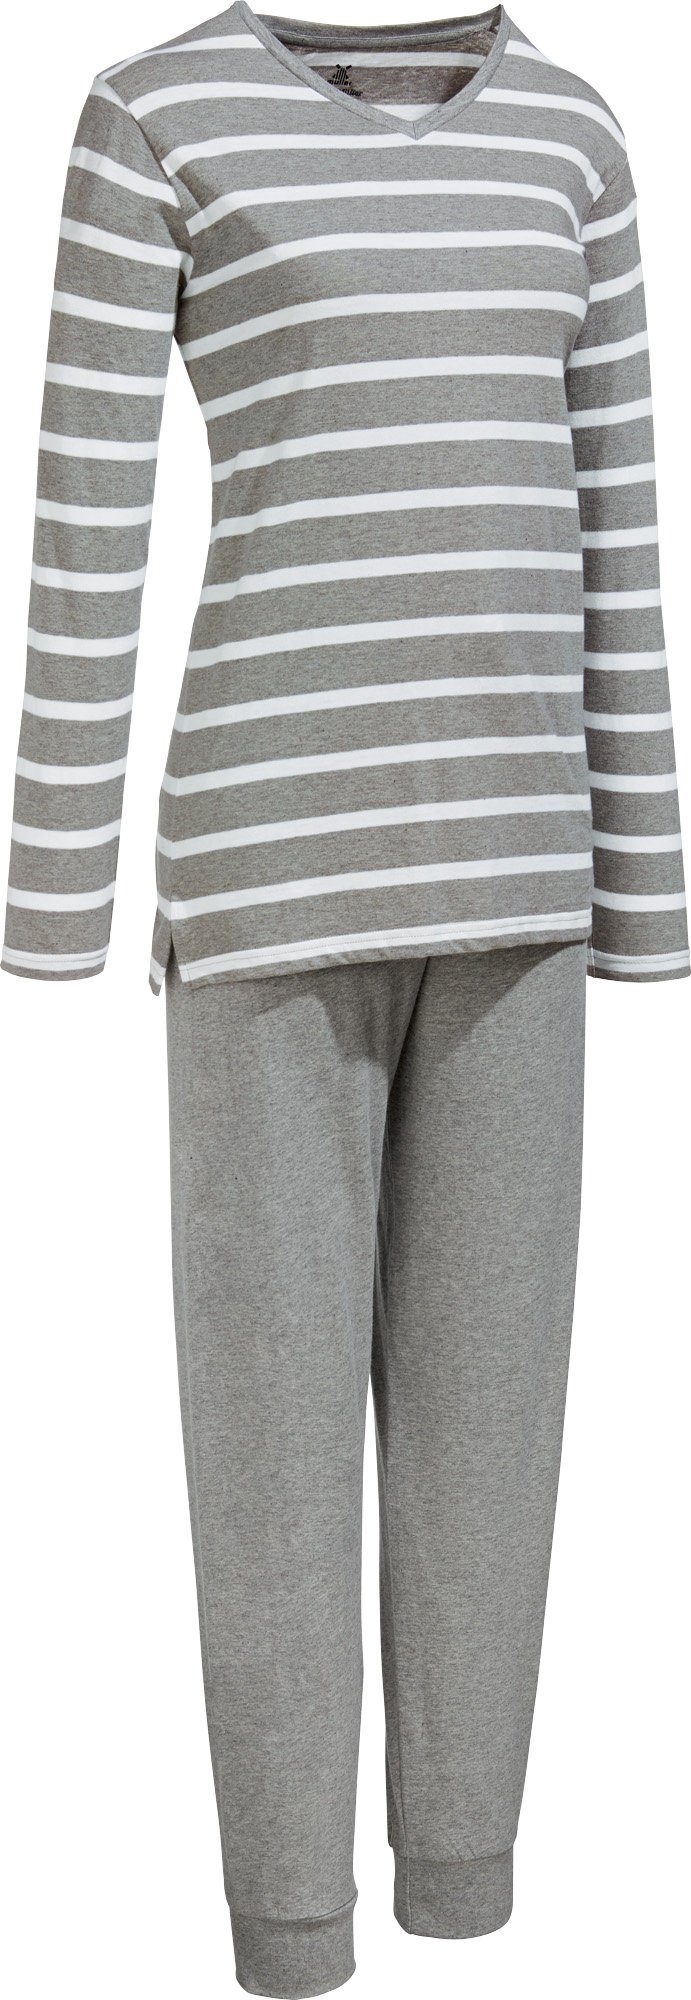 Erwin Müller Pyjama Damen-Schlafanzug Single-Jersey Streifen | Pyjamas